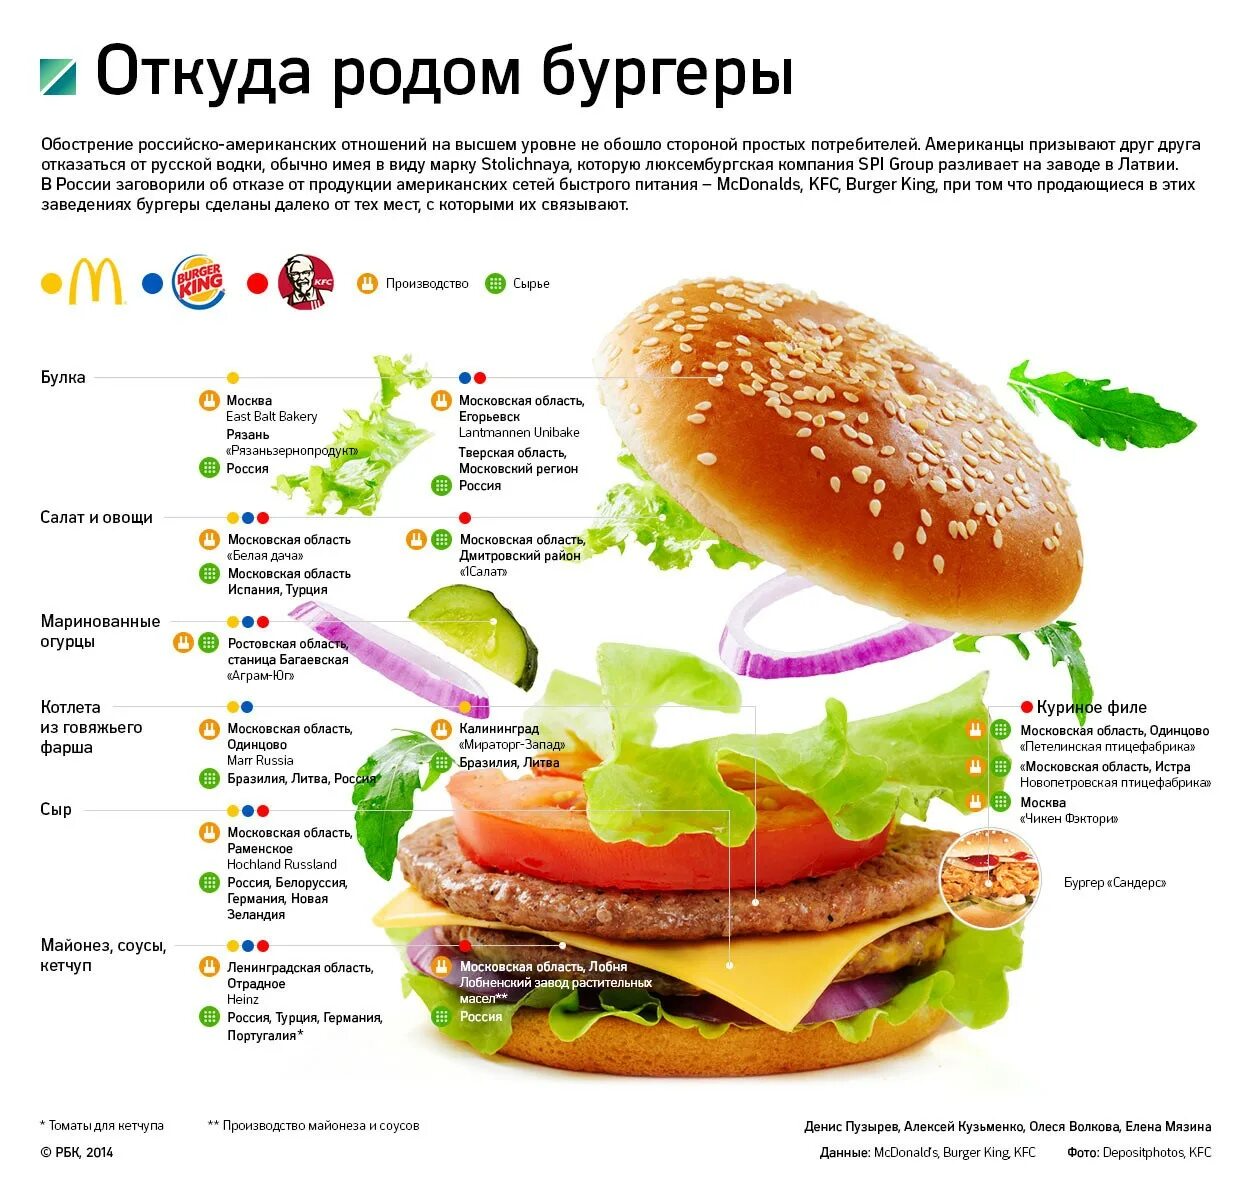 Технологическая карта макдональдс гамбургер. Из чево состоит бургер. Состав бургеров. Состав гамбургера.